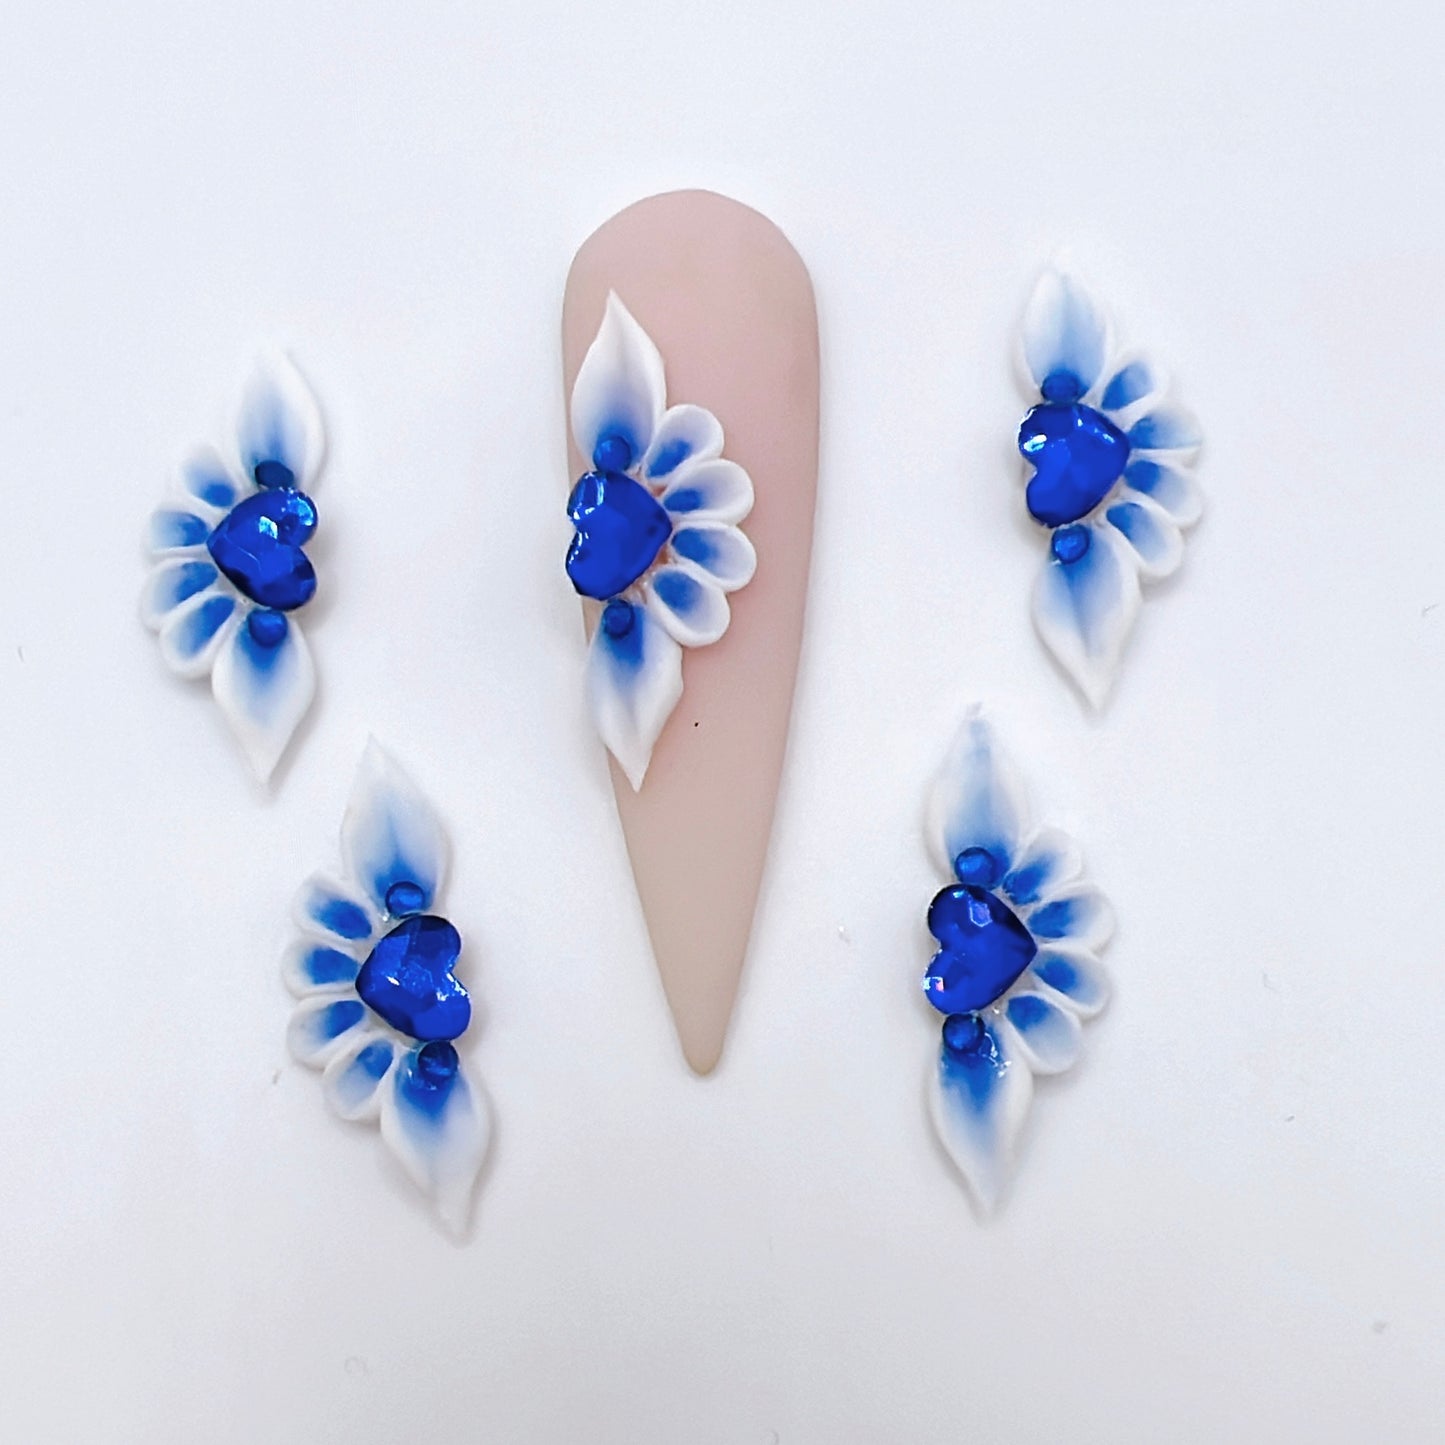 4pcs Long Petal 3D Acrylic Nail Flowers